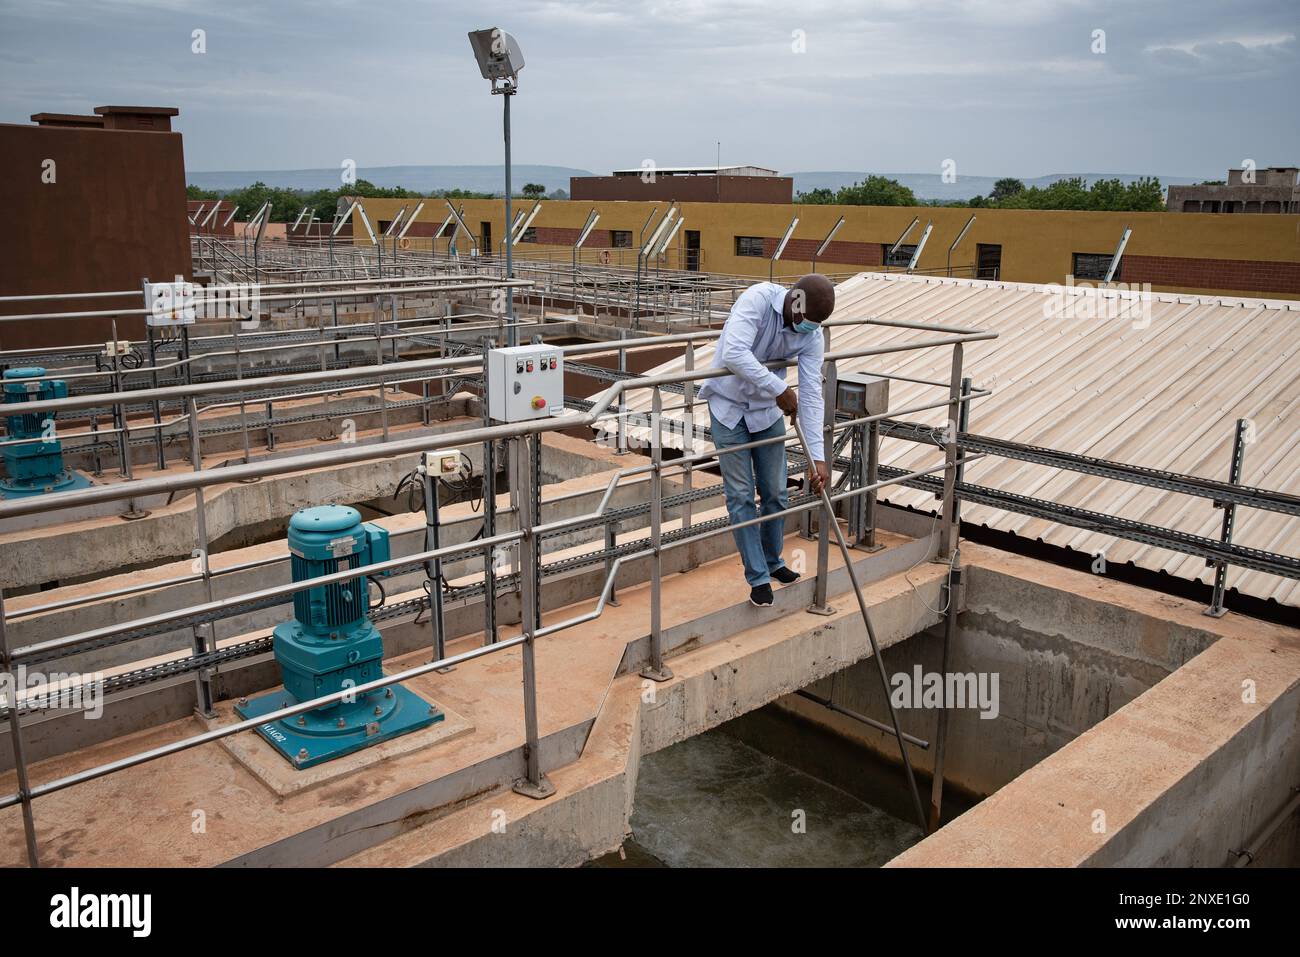 Nicolas Remene / le Pictorium - impianto di trattamento delle acque del fiume Kabala Niger. - 19/5/2021 - Mali / Distretto di Bamako / Bamako - Kalilou DEM, un motore Foto Stock